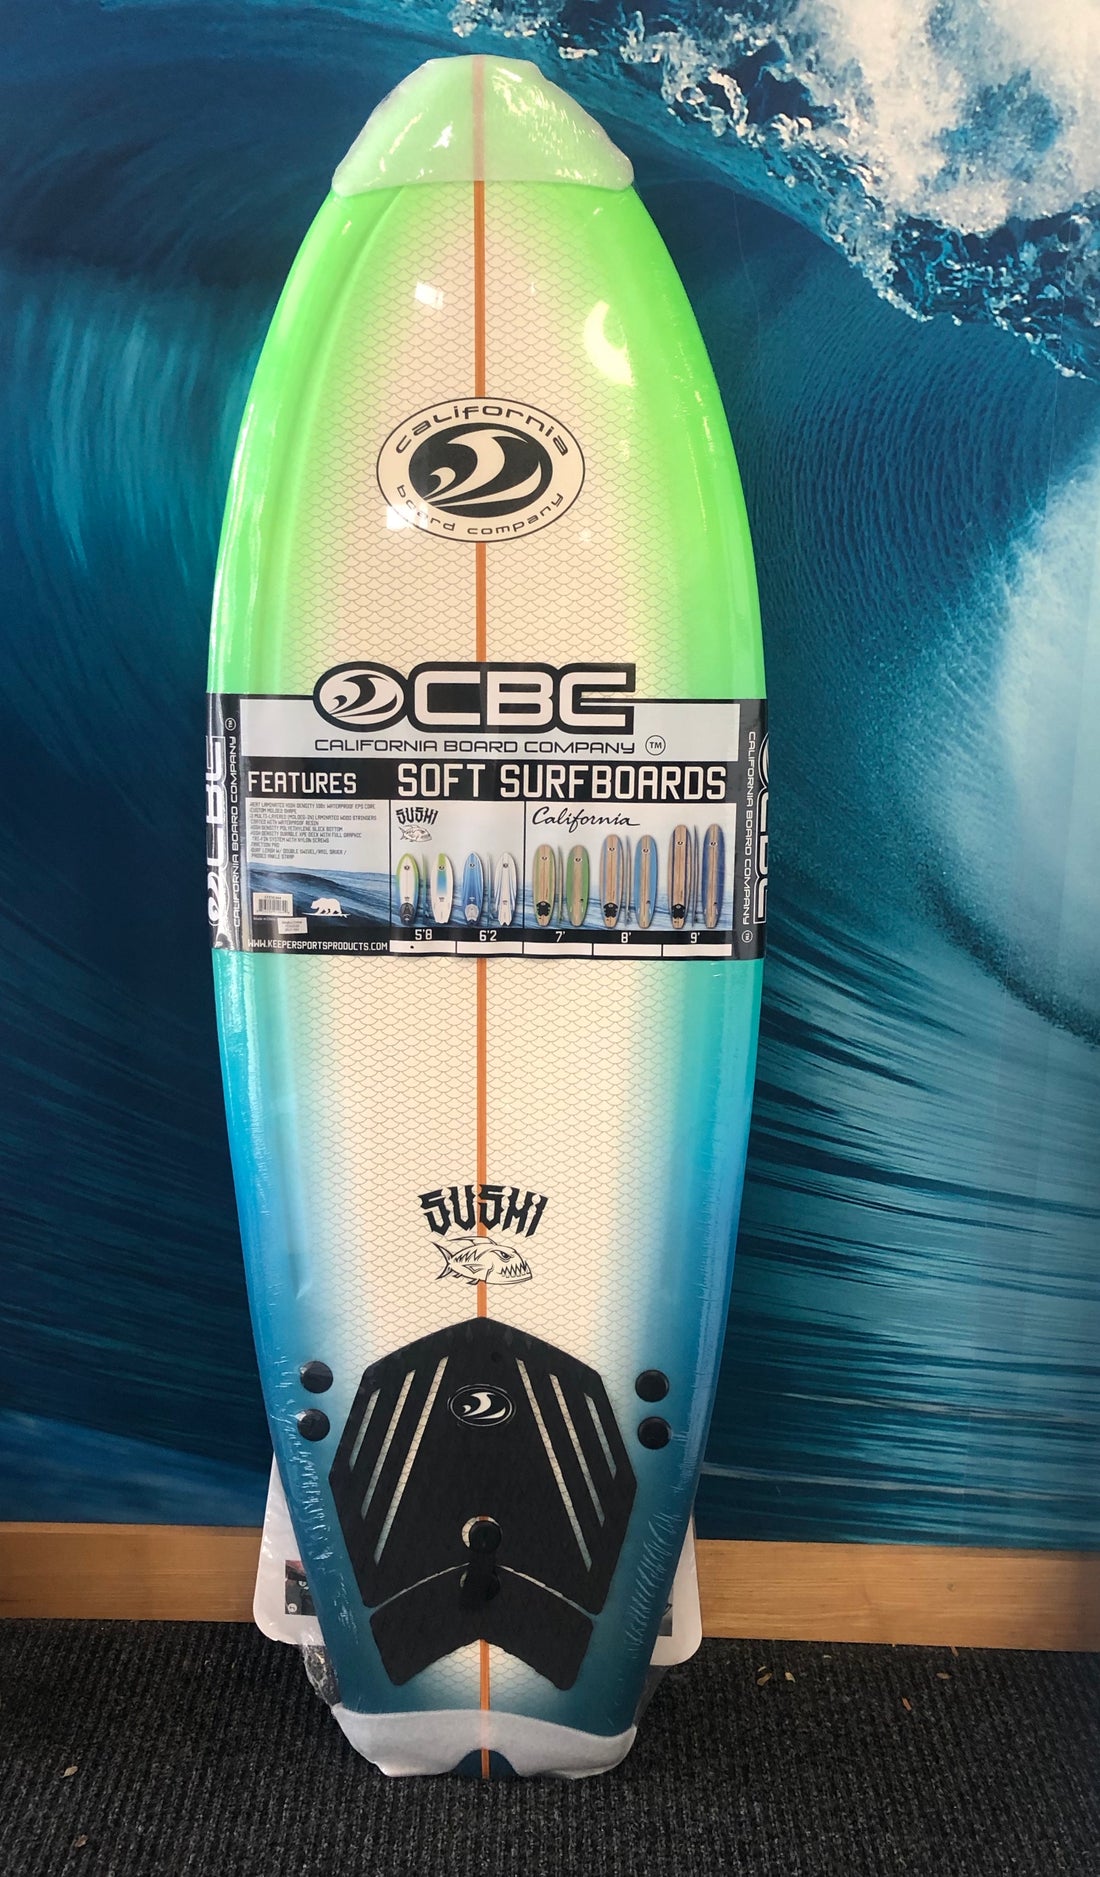 Surfboard - CBC Slasher 5'8" Fish Soft Surf Board